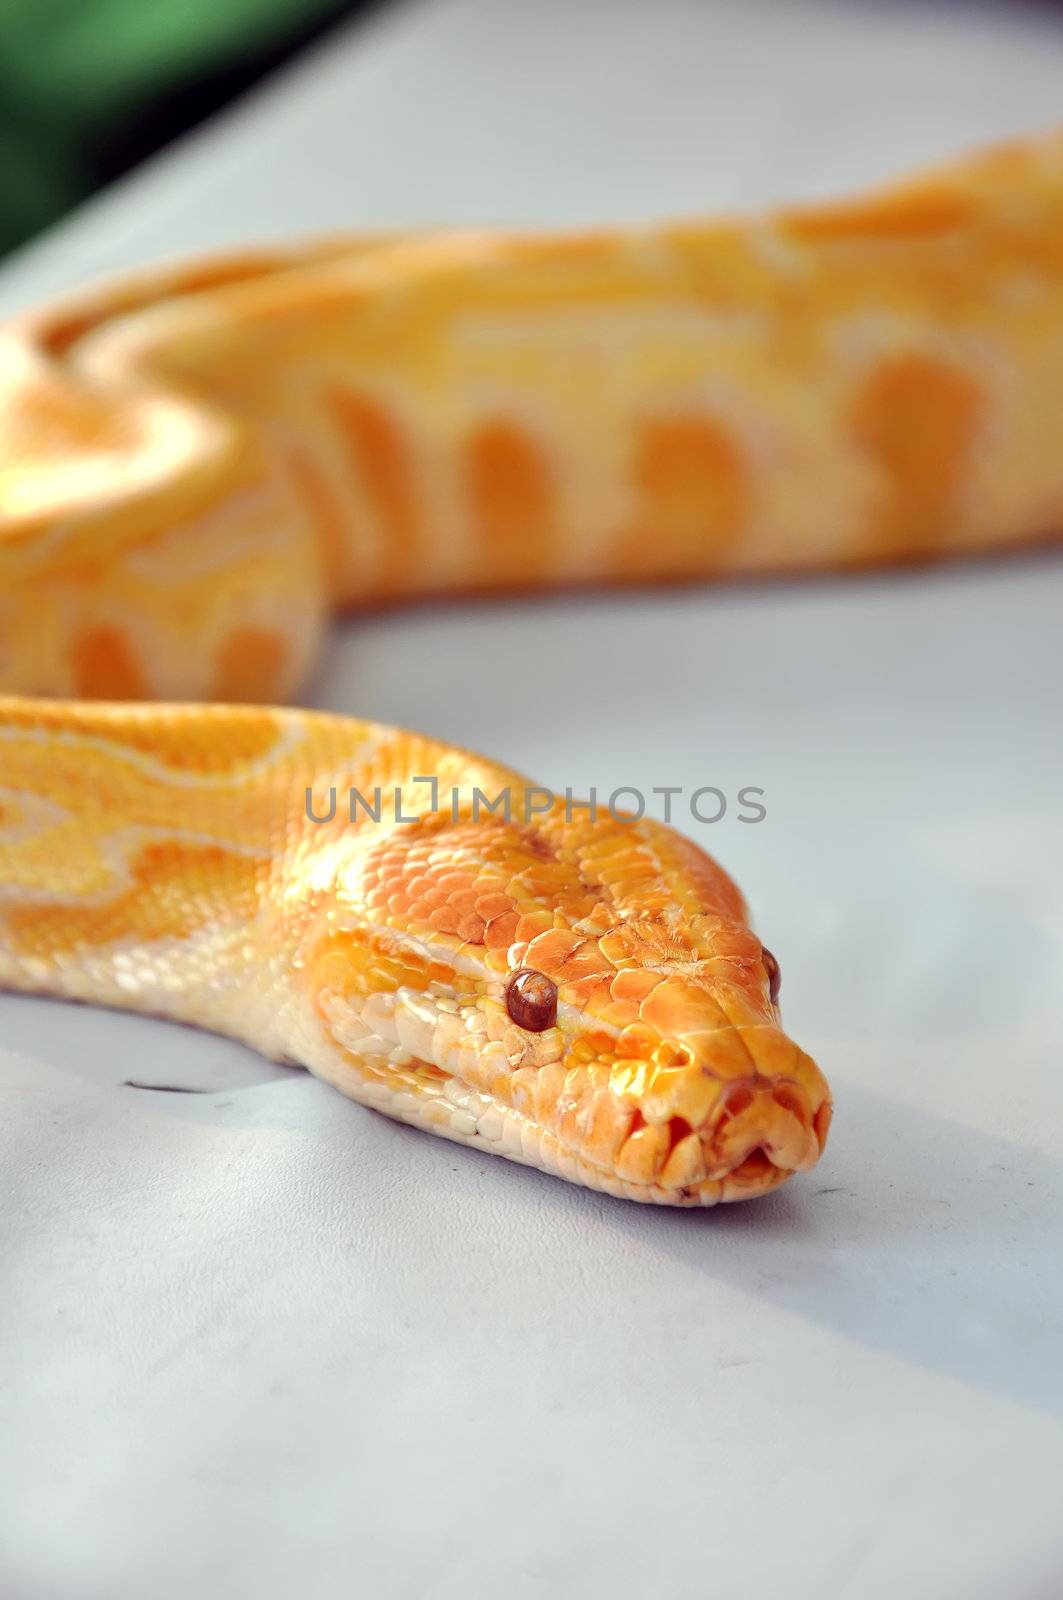 boa snake